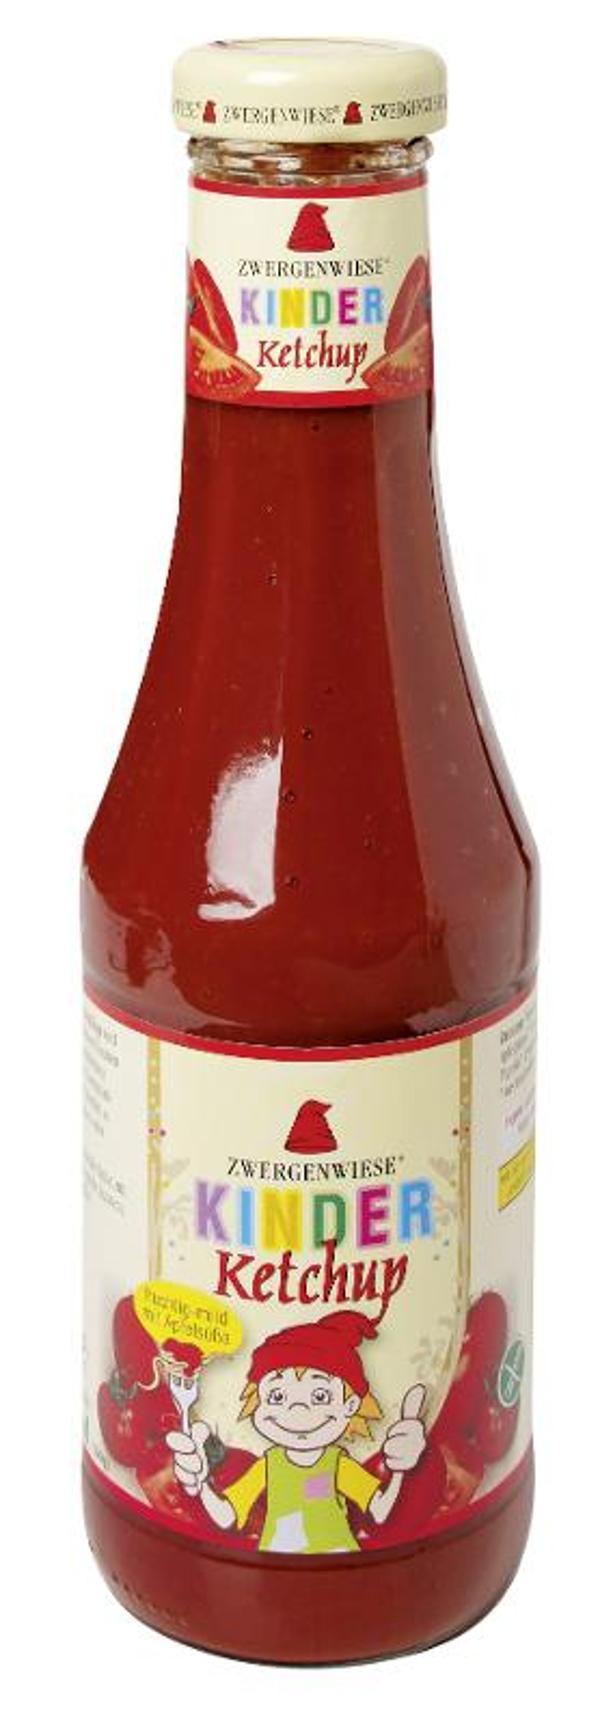 Produktfoto zu Zwergenwiese Kinder Ketchup mit Apfelsüße - 500ml